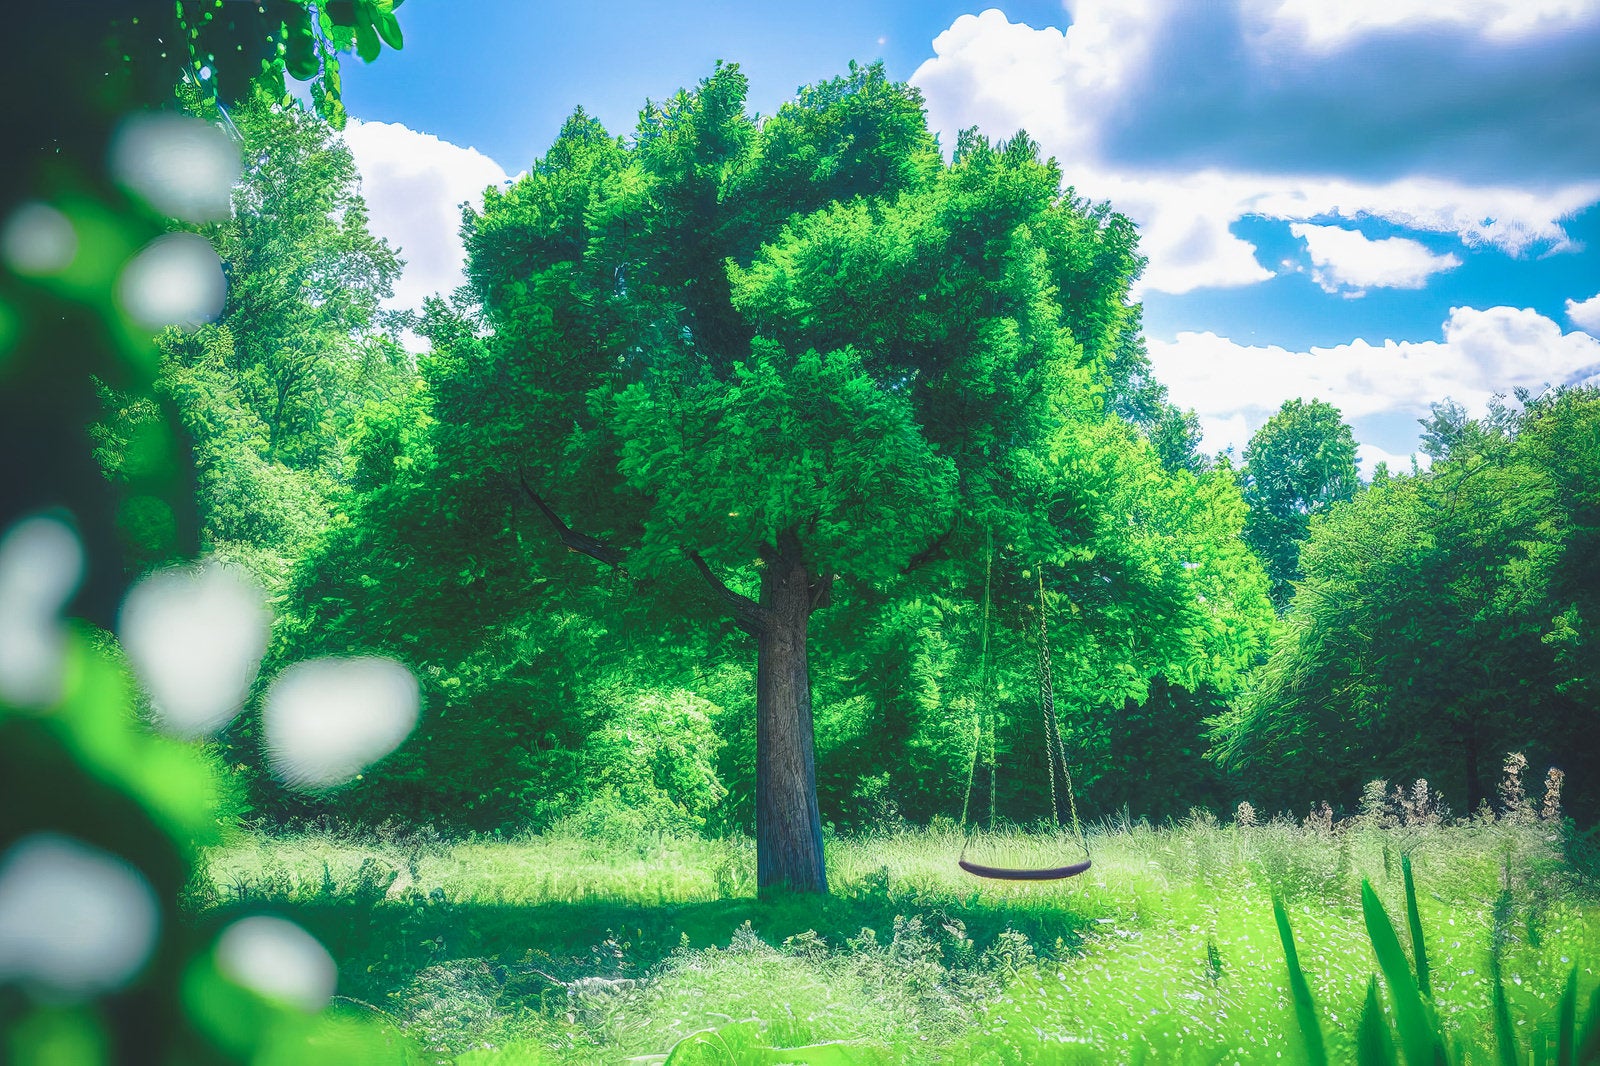 「新緑の大樹とともに揺れるブランコ」の写真